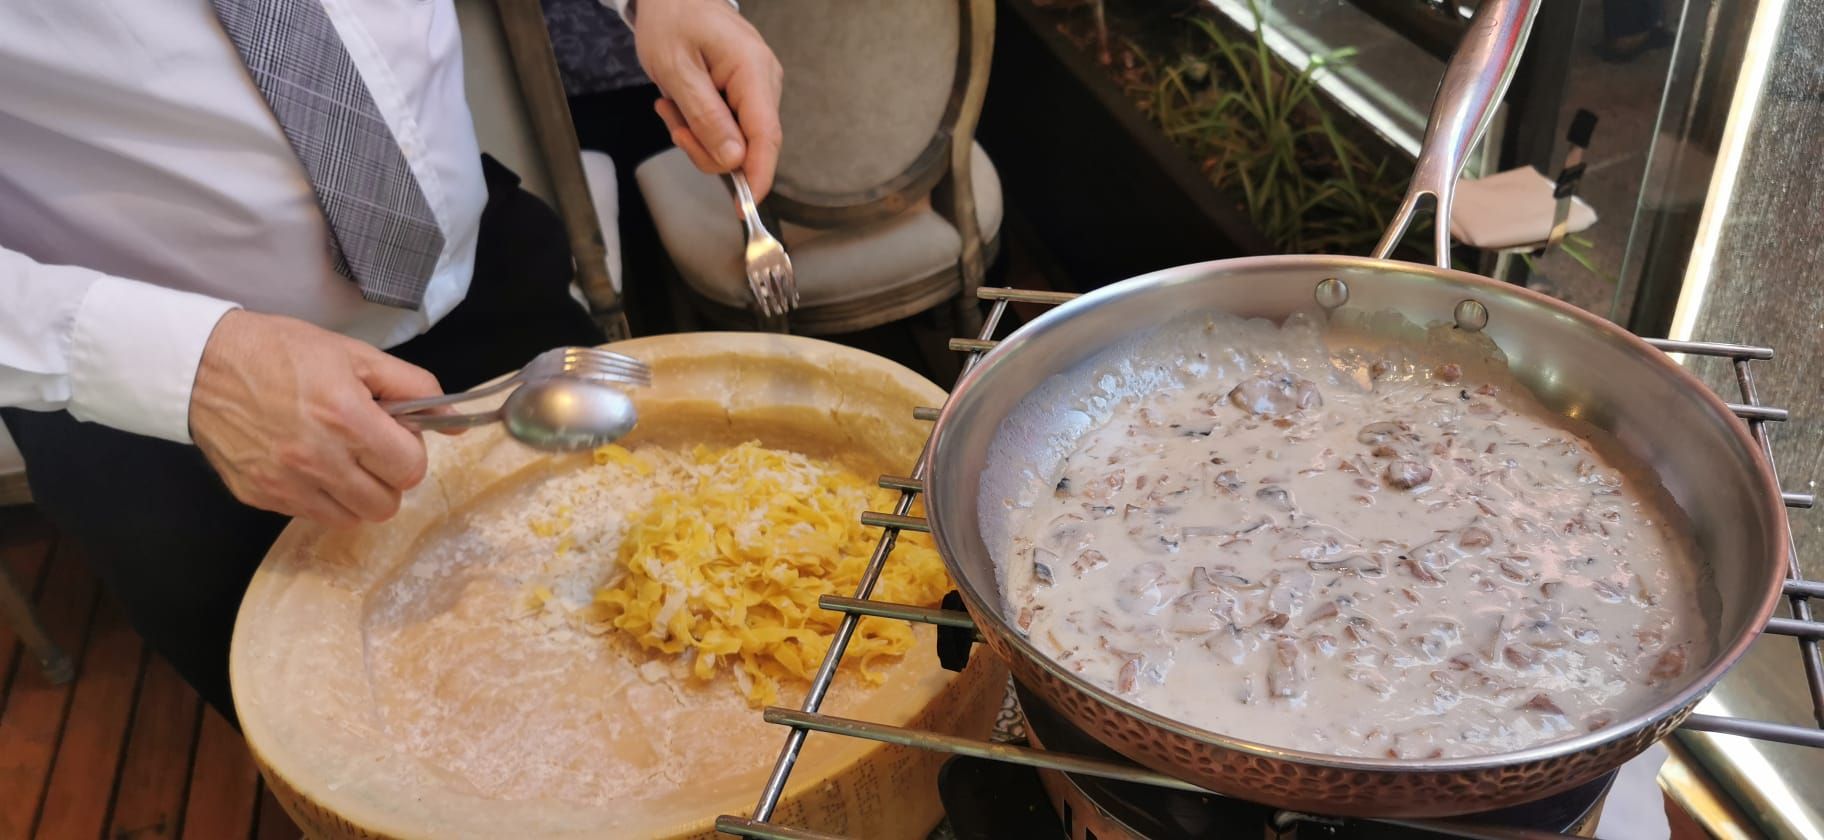 cómo se hace el famoso 'Tagliatelle al Parmesano' de la rueda de queso del restaurante El Foro